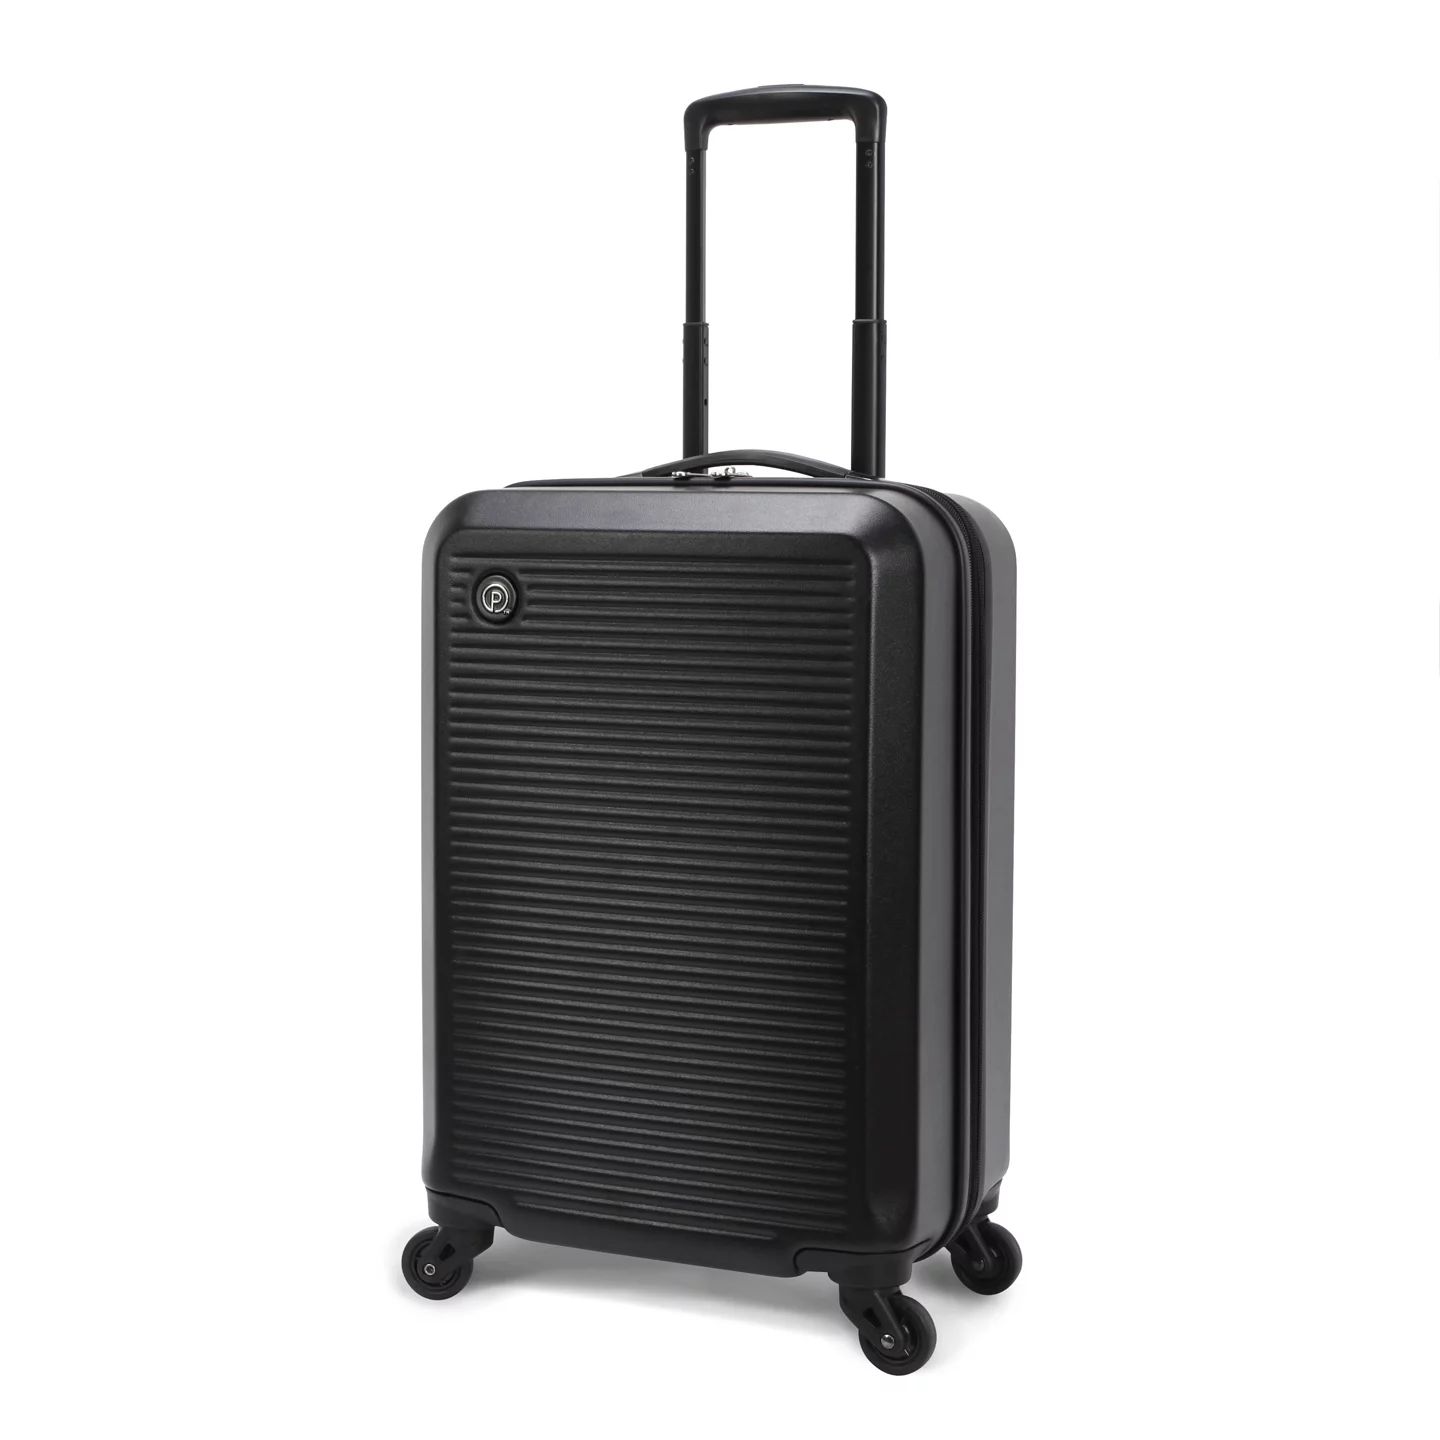 Protege 20" Hardside Carry-on Spinner Luggage, Matte Black | Walmart (US)